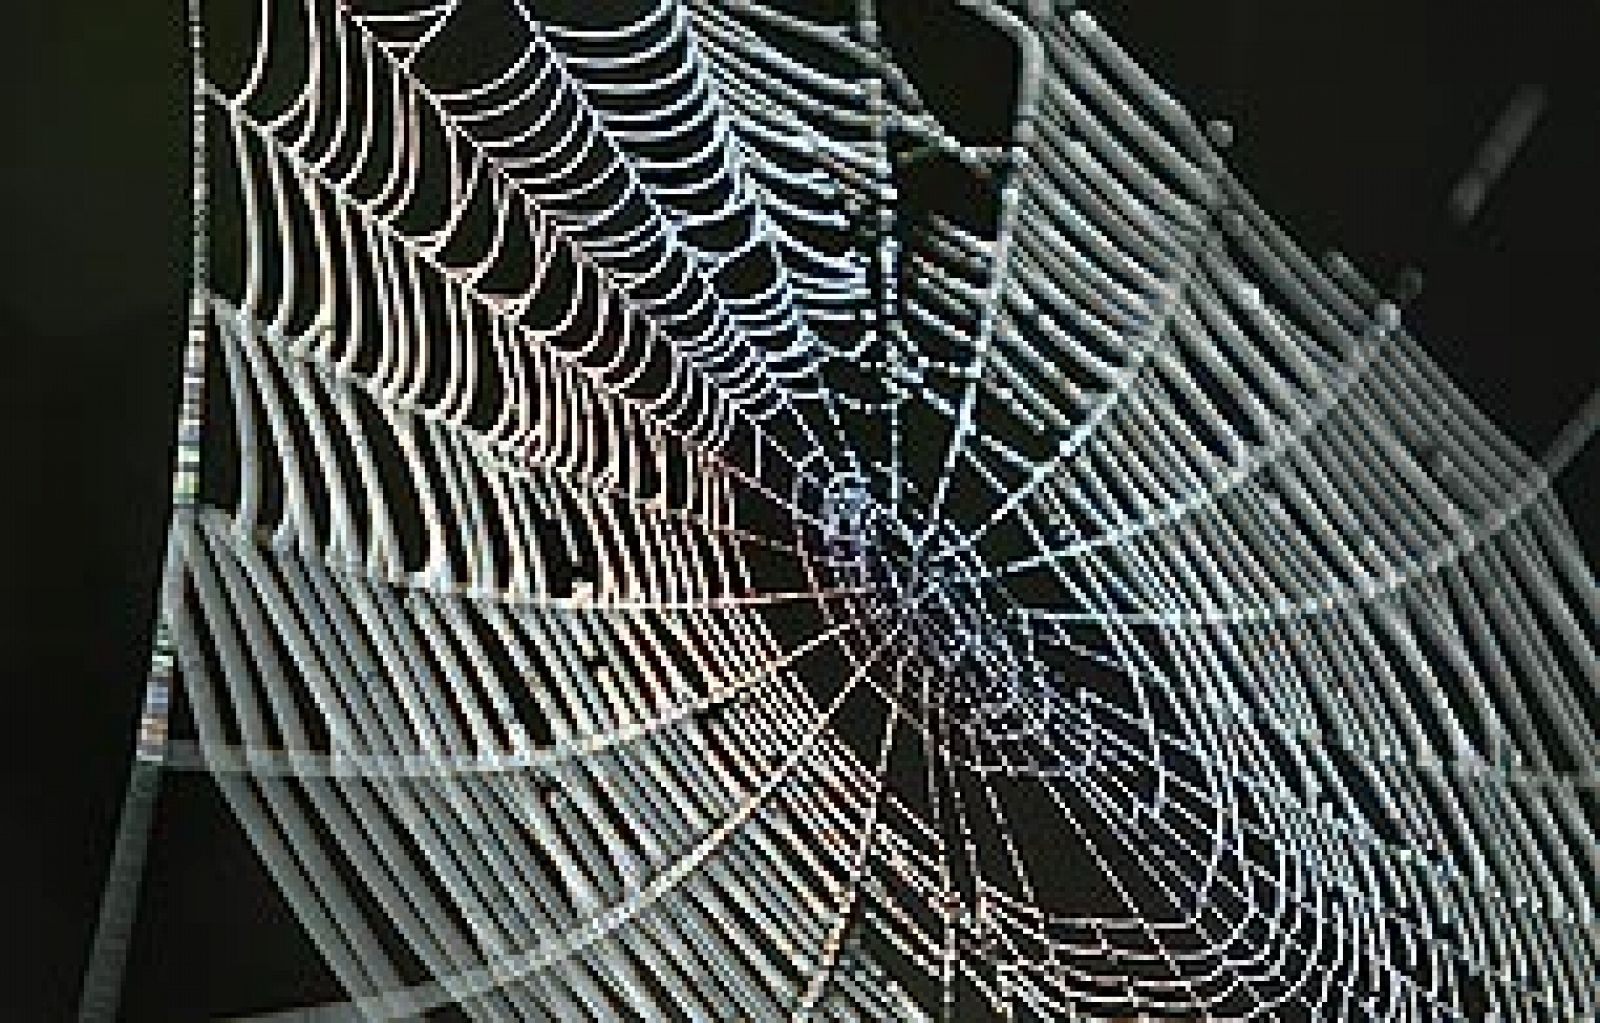 Sólo 50 de las 70.000 especies de arañas son peligrosas